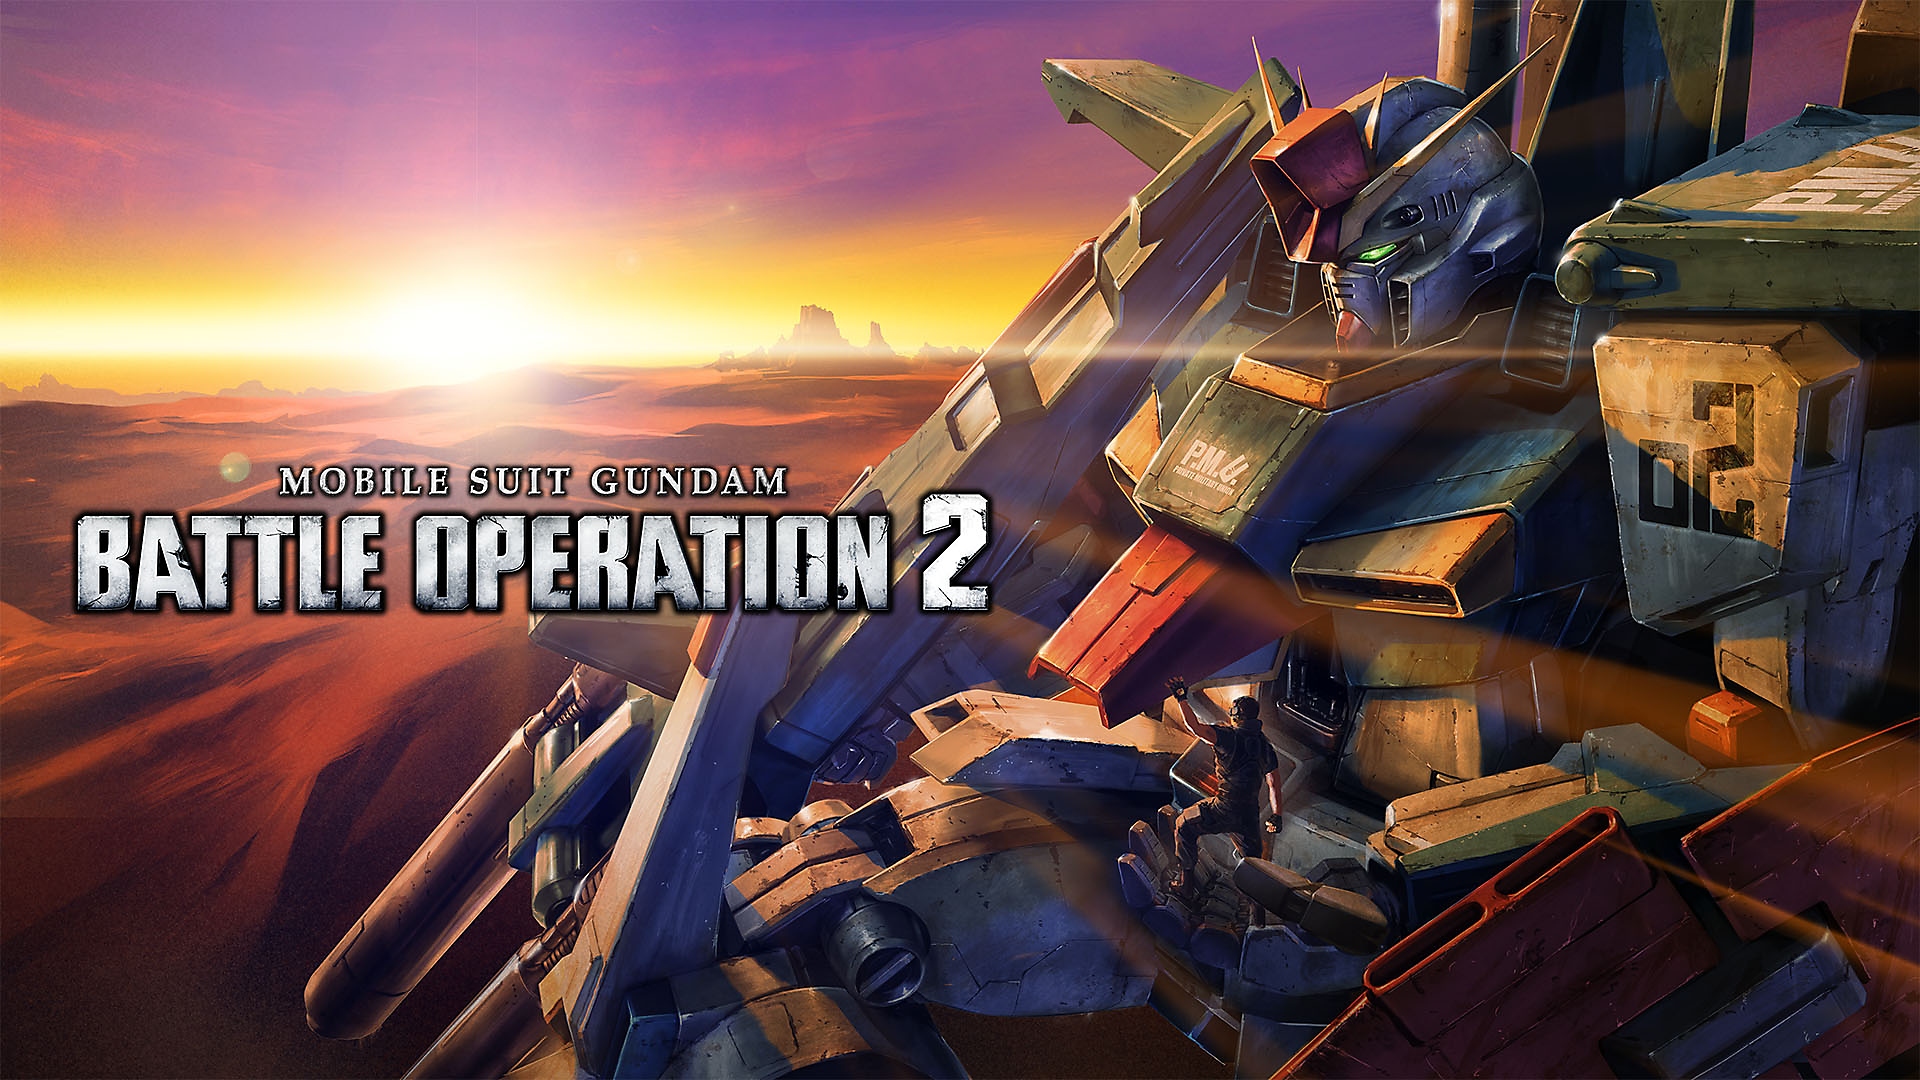 Mobile Suit Gundam Battle Operation 2 - Launch Trailer | PS4